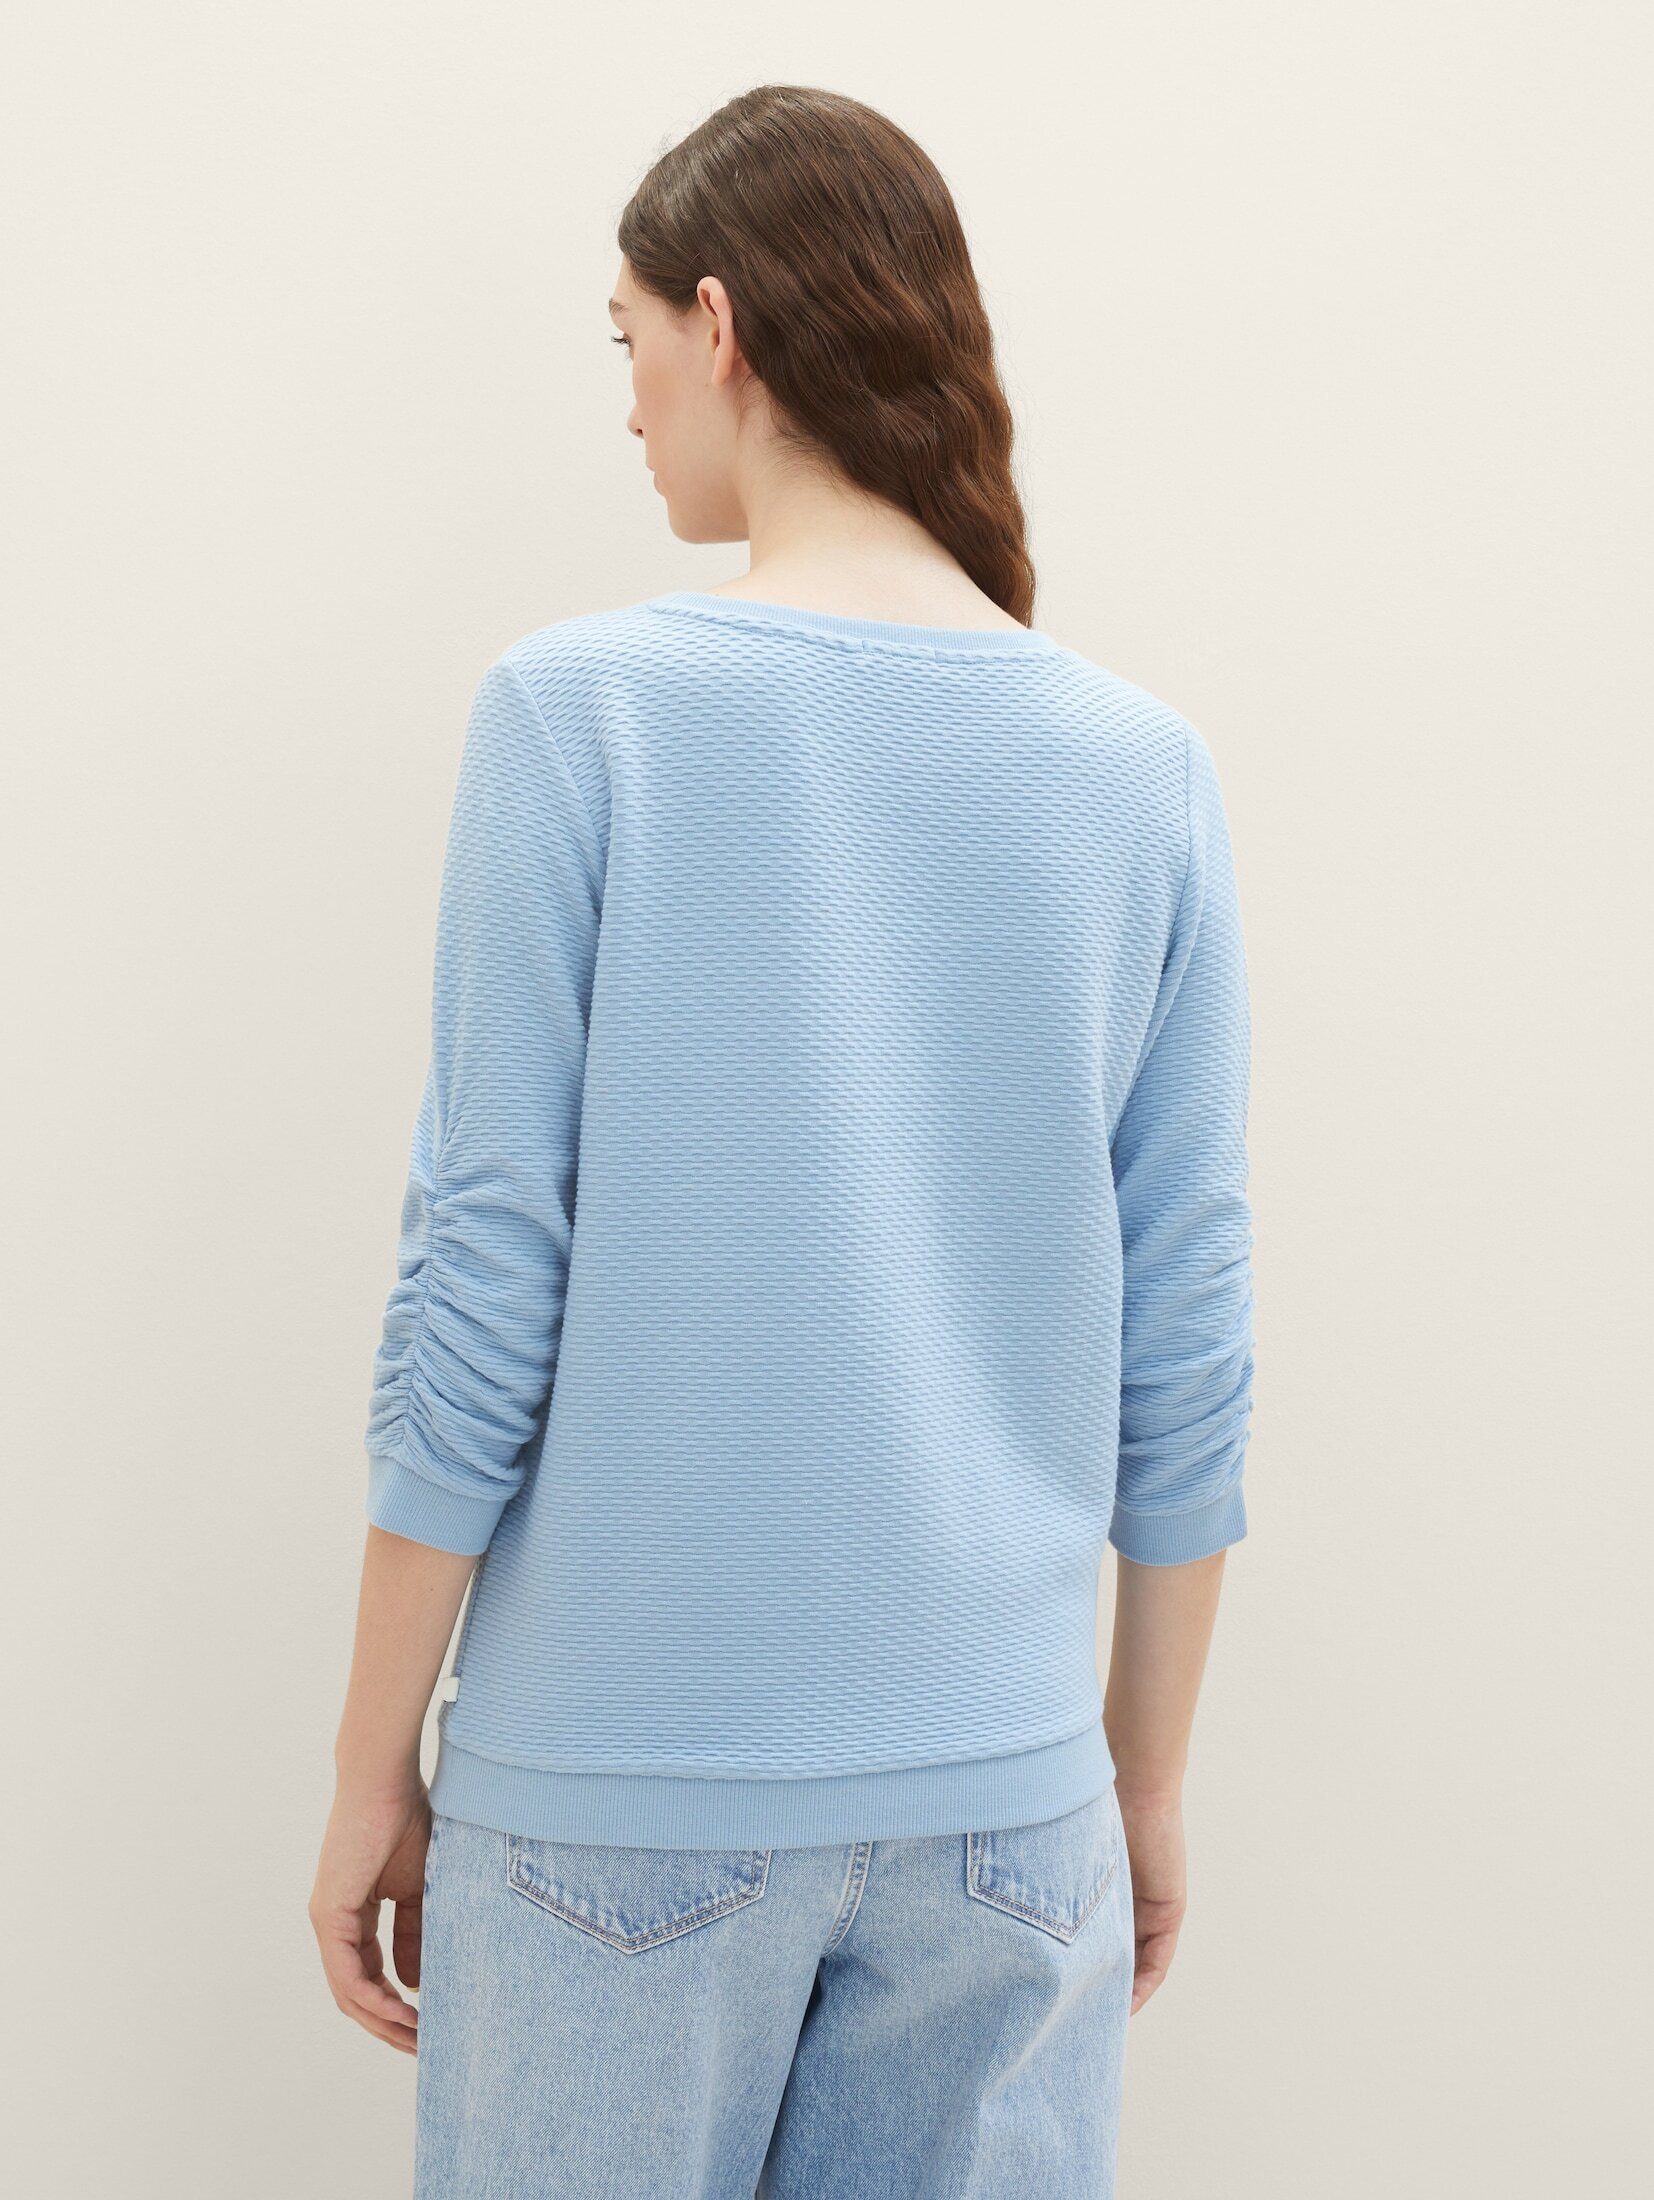 Soft TAILOR Sweatshirt TOM Sweatshirt Charming Blue Strukturiertes Denim